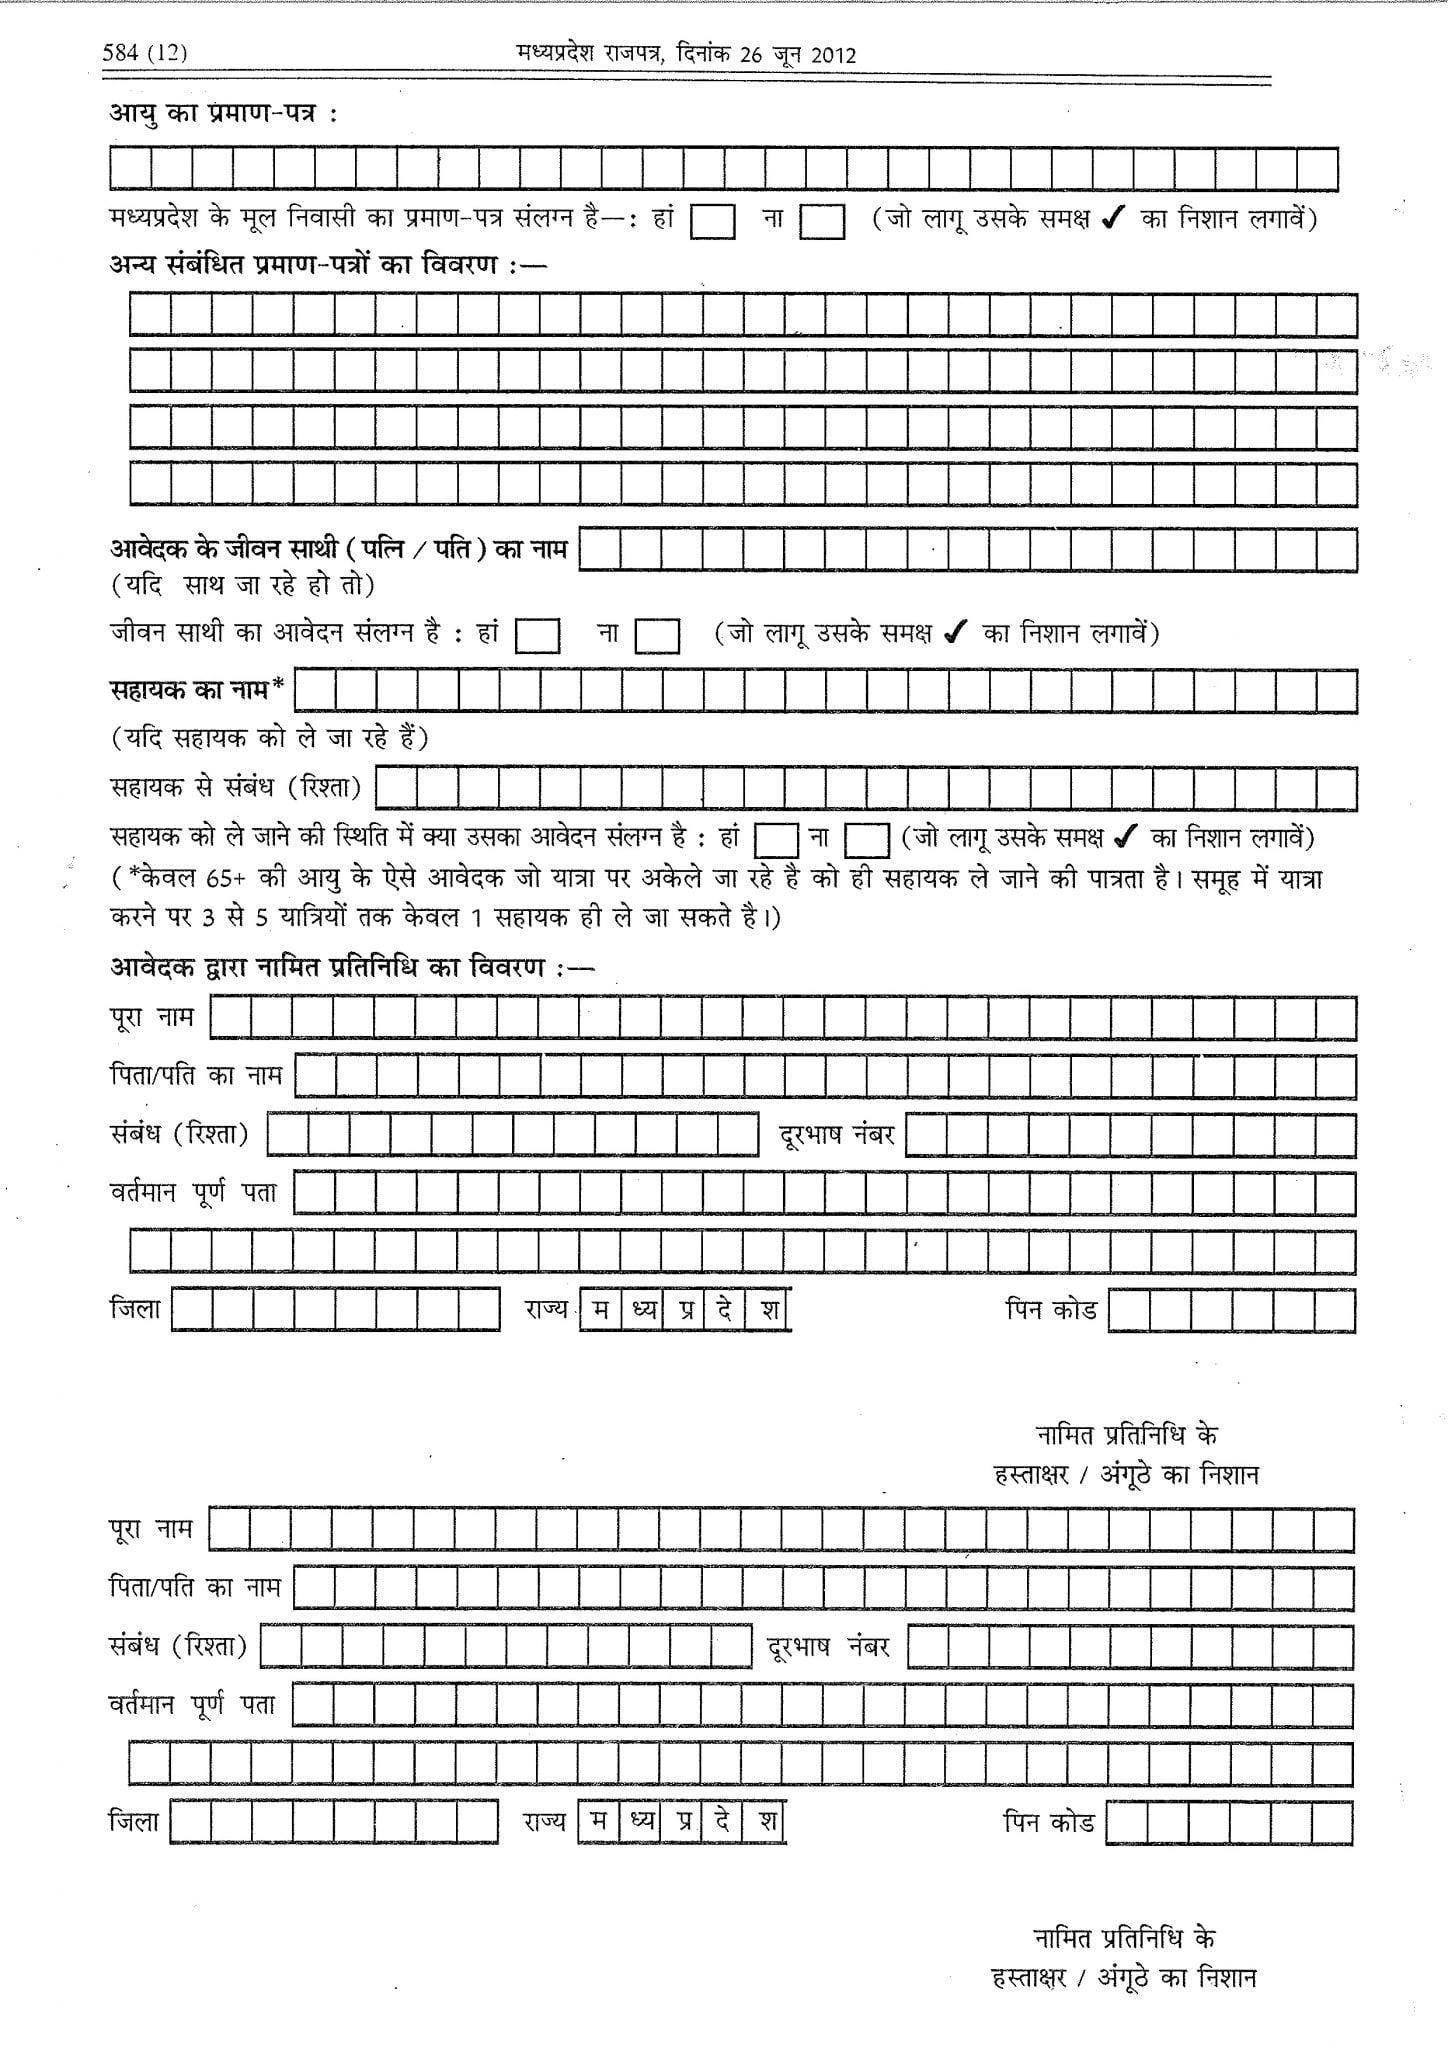 MP Mukhyamantri Teerth Darshan Yojana Application Form